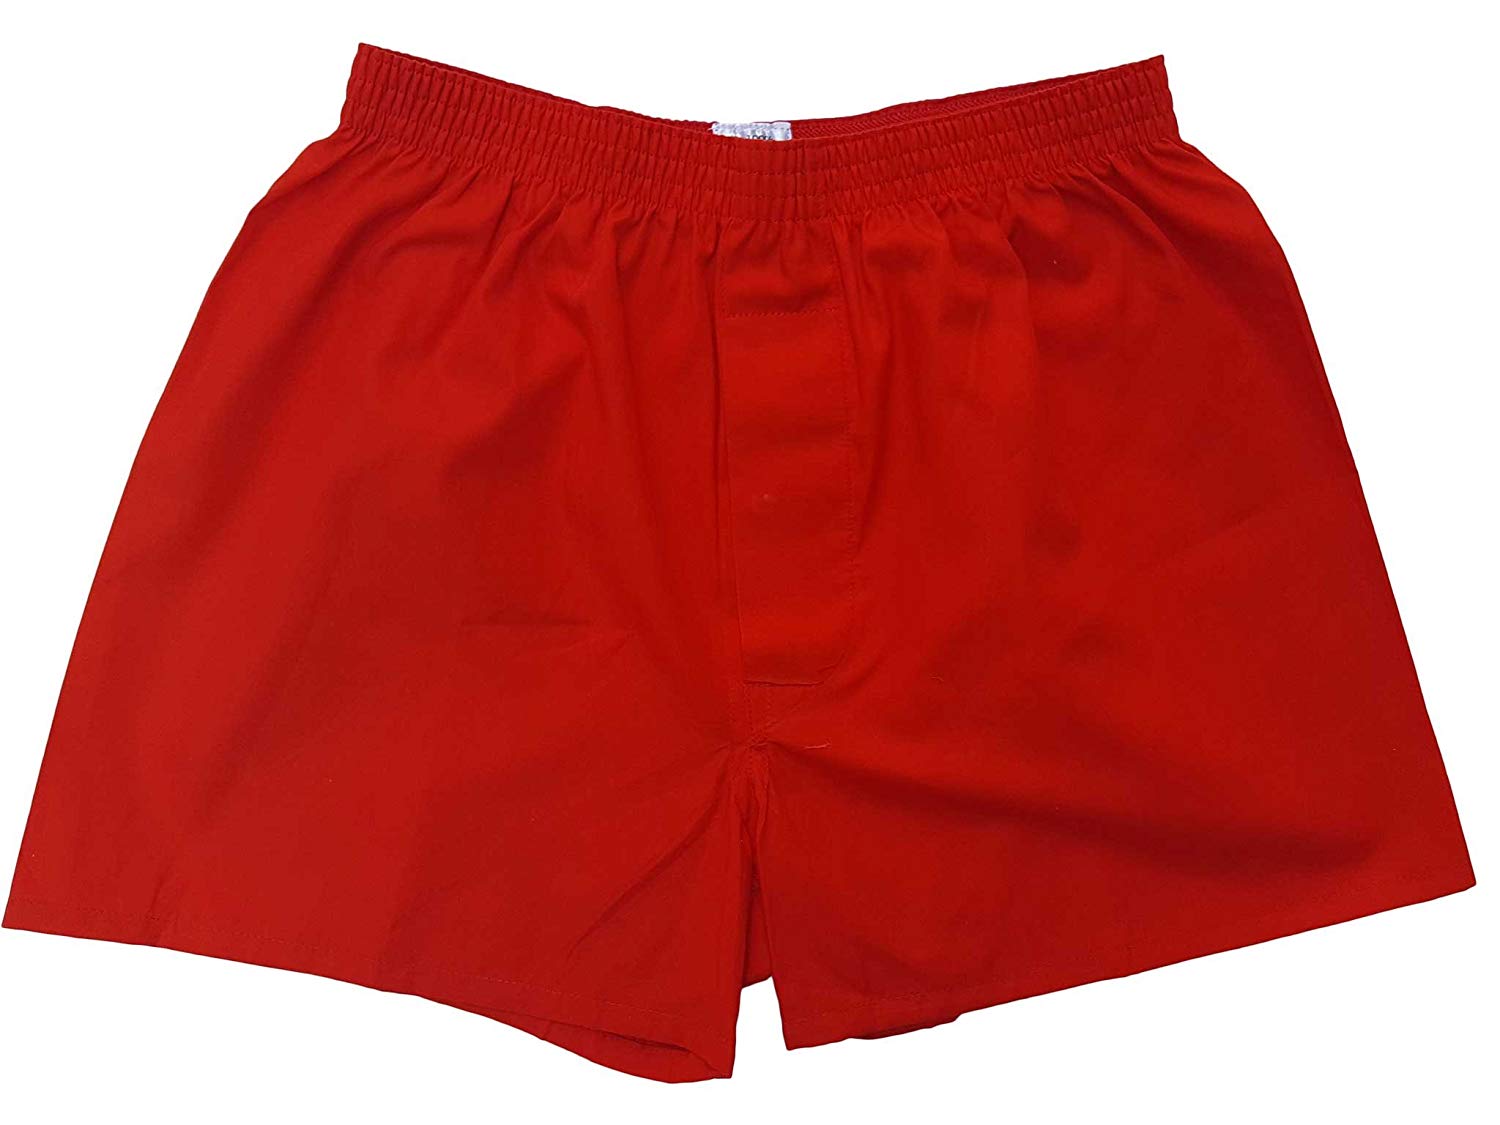 トランクス 赤 赤色 日本製 5枚 セット 父の日 ギフト 誕生日 プレゼント 福袋 送料無料 還暦祝い メンズ 下着 男性 M L LL 綿100% 前開き 赤パンツ